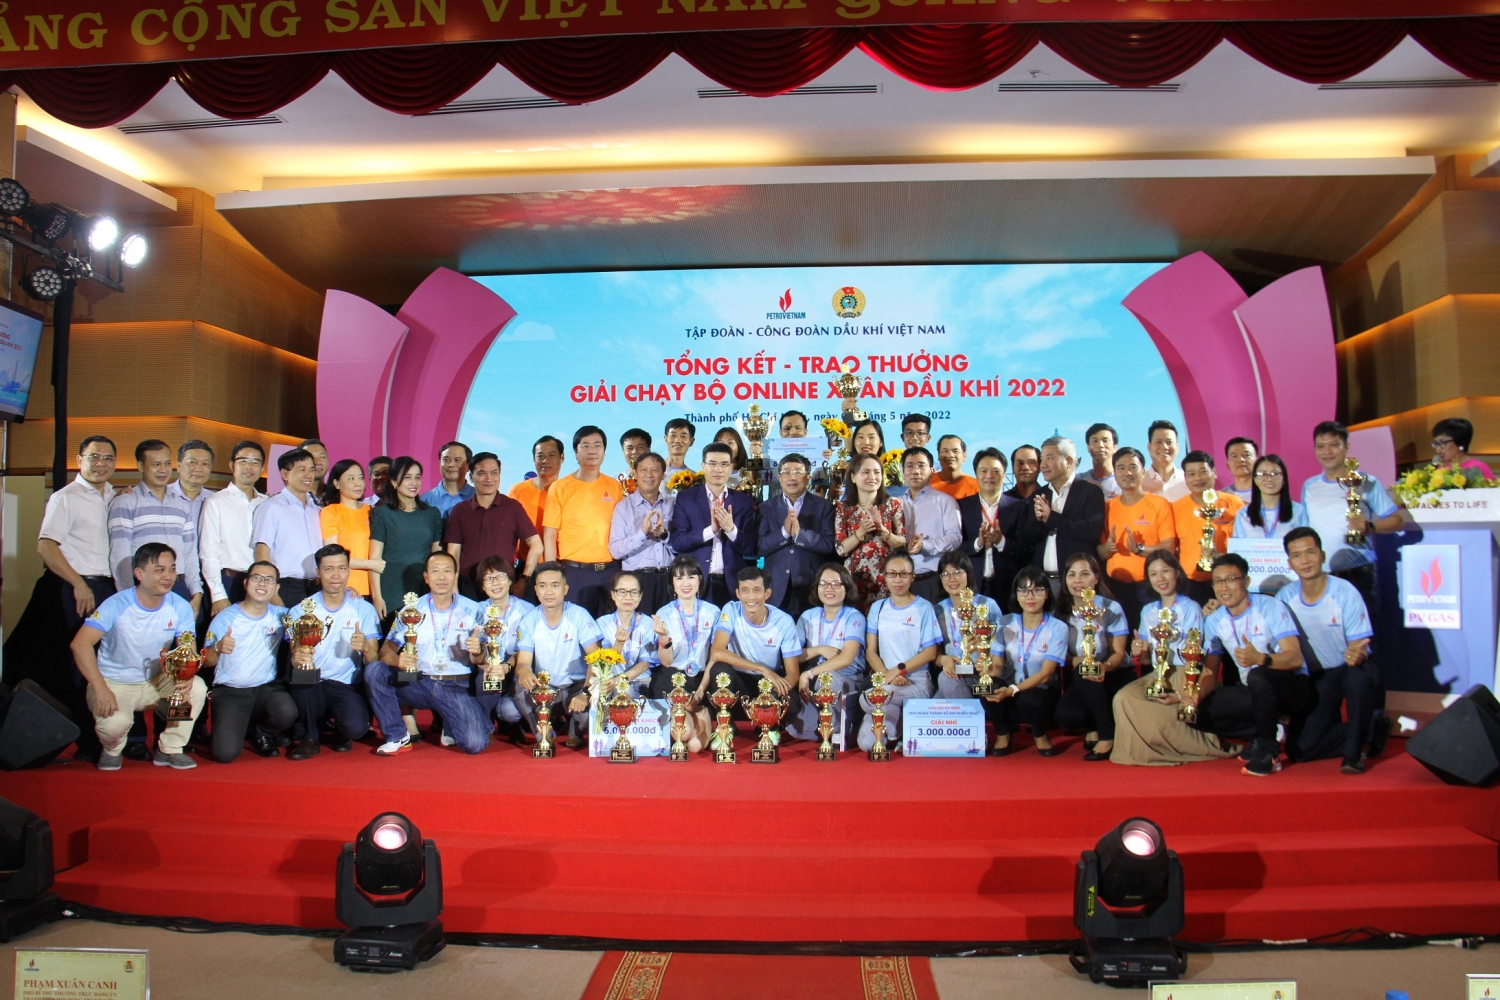 CĐ DKVN gặp mặt Người lao động Dầu khí tiêu biểu và Tổng kết, trao thưởng Giải chạy bộ online “Xuân Dầu khí 2022”